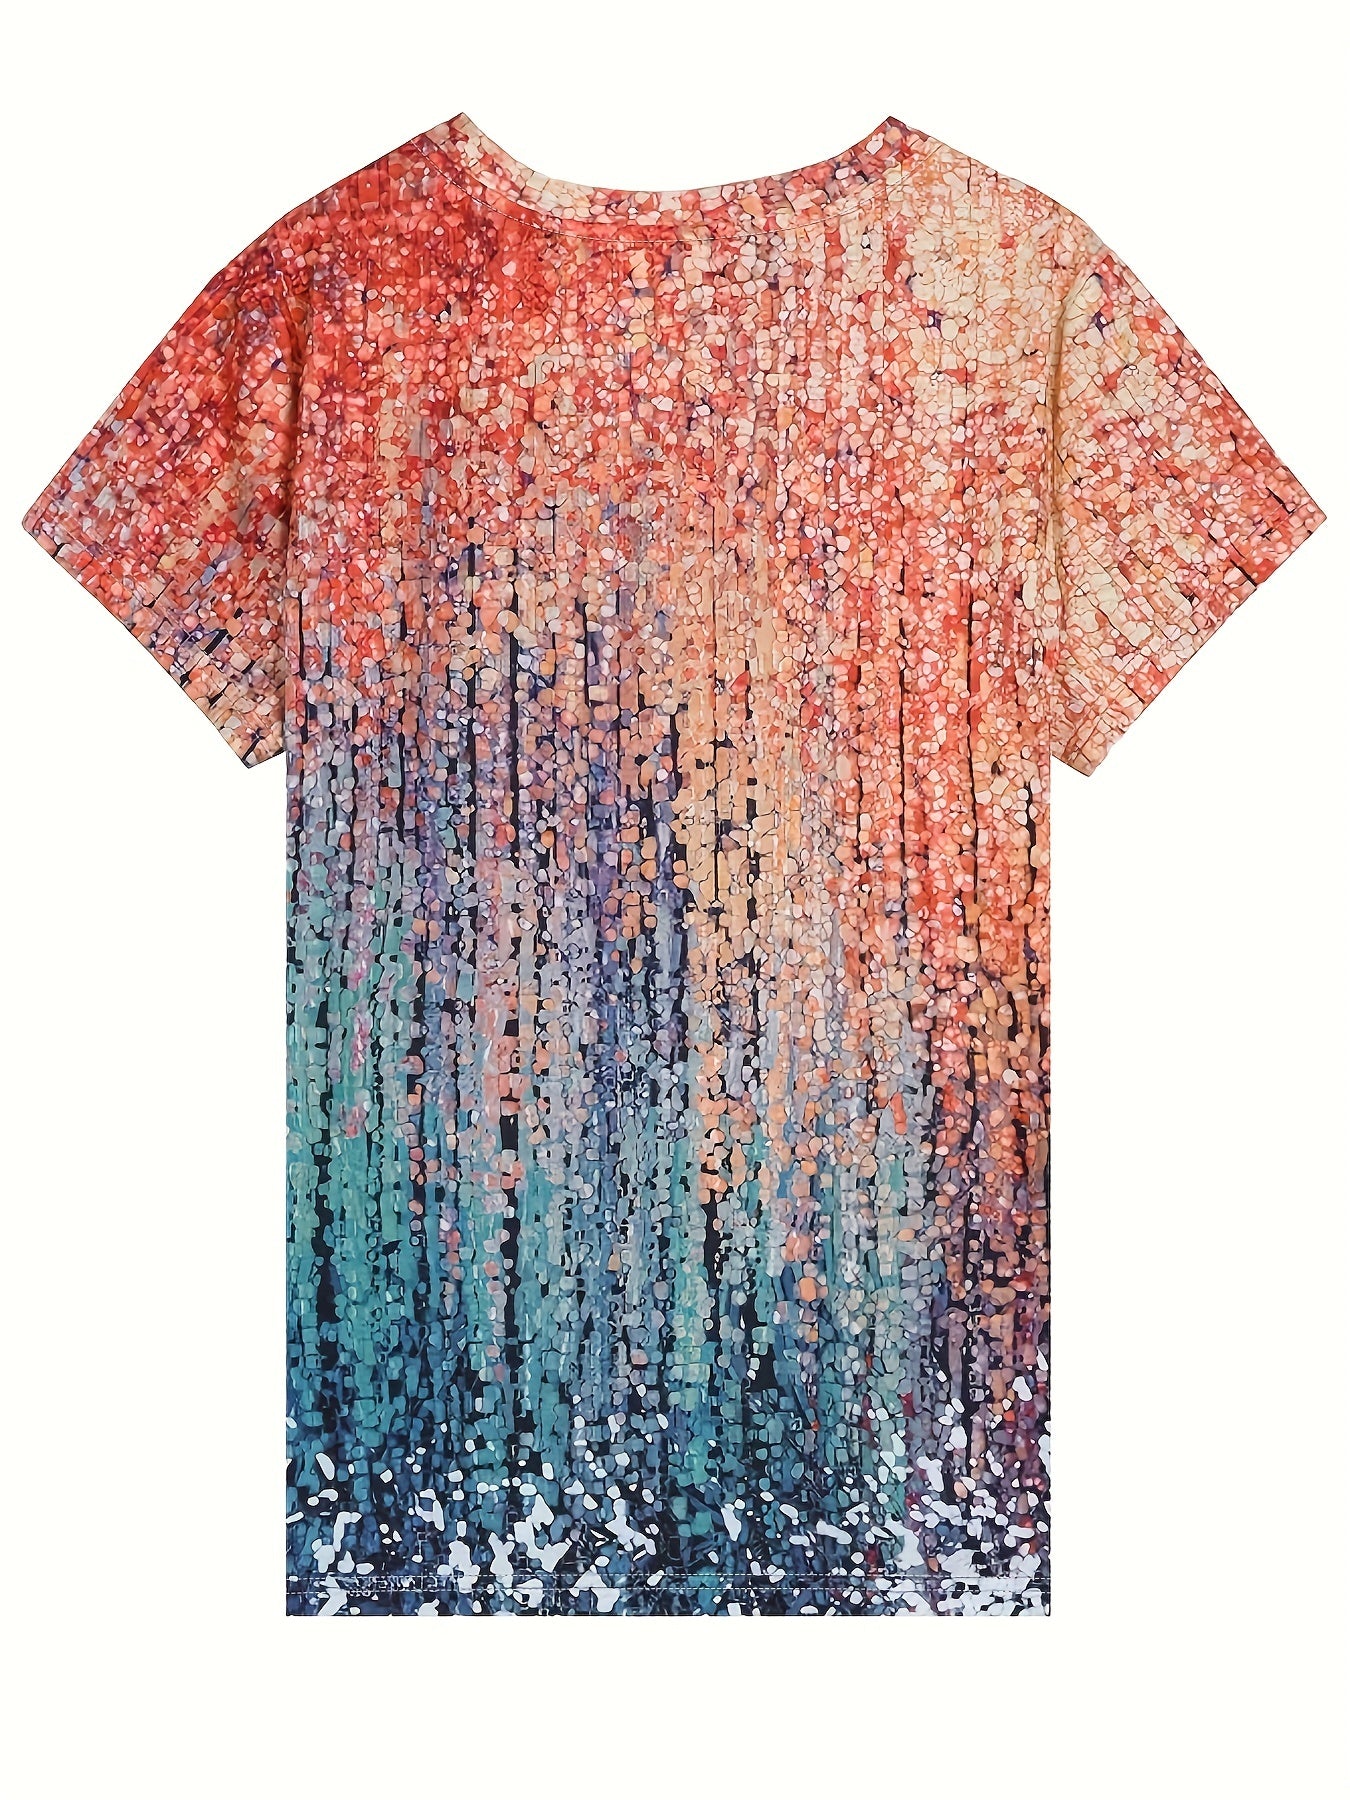 Vorioal Full Print Color Block T-shirt